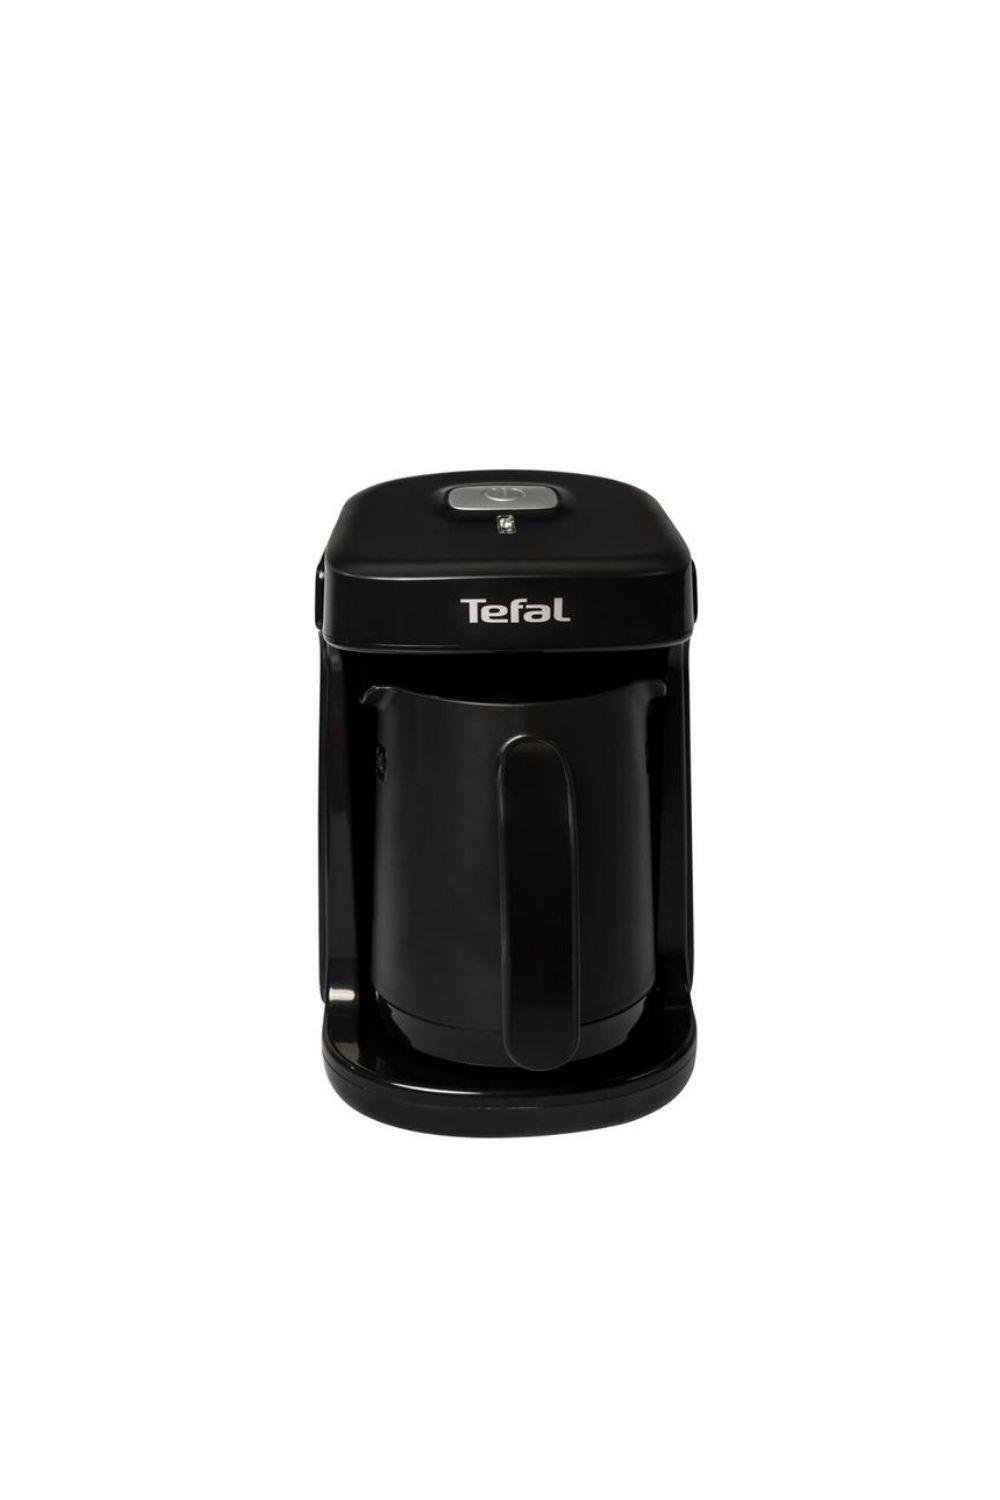 Tefal CM8118 Köpüklüm Compact Siyah Türk Kahve Makinesi (Teşhir & Outlet) -  9100040089 - Teşhir & Outlet Fırsatlarıyla | En Uygun Fiyatlar ve Hızlı  Kargo!